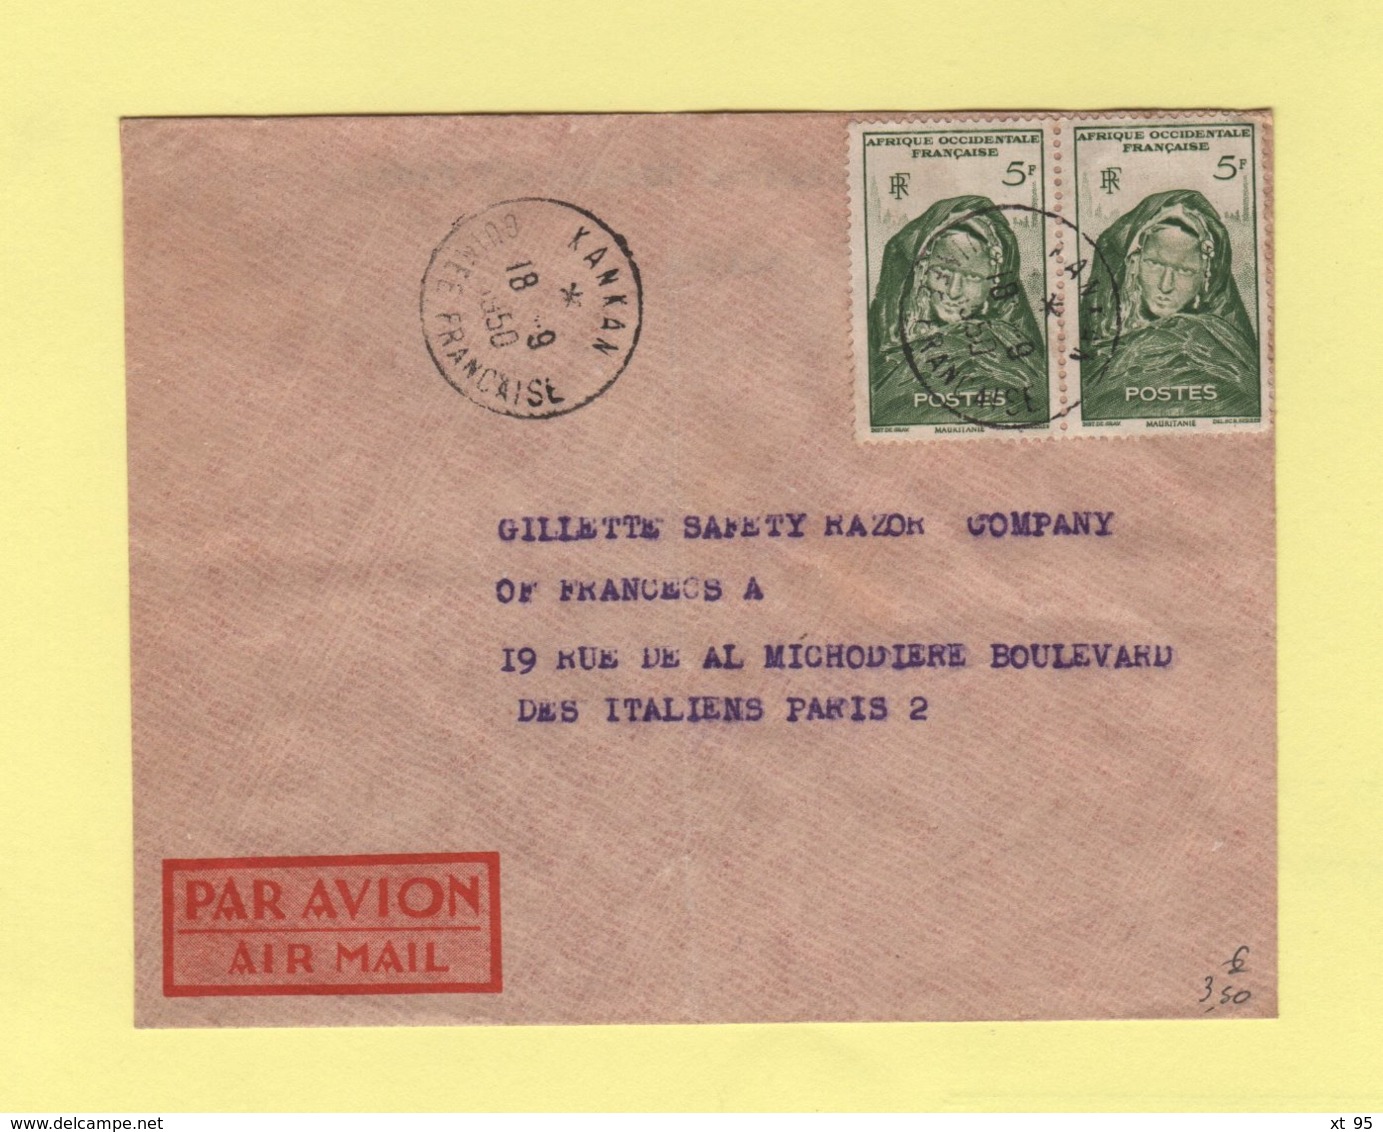 Guinee Francaise - Kankan - 18-9-1950 - Par Avion Destination France - Covers & Documents